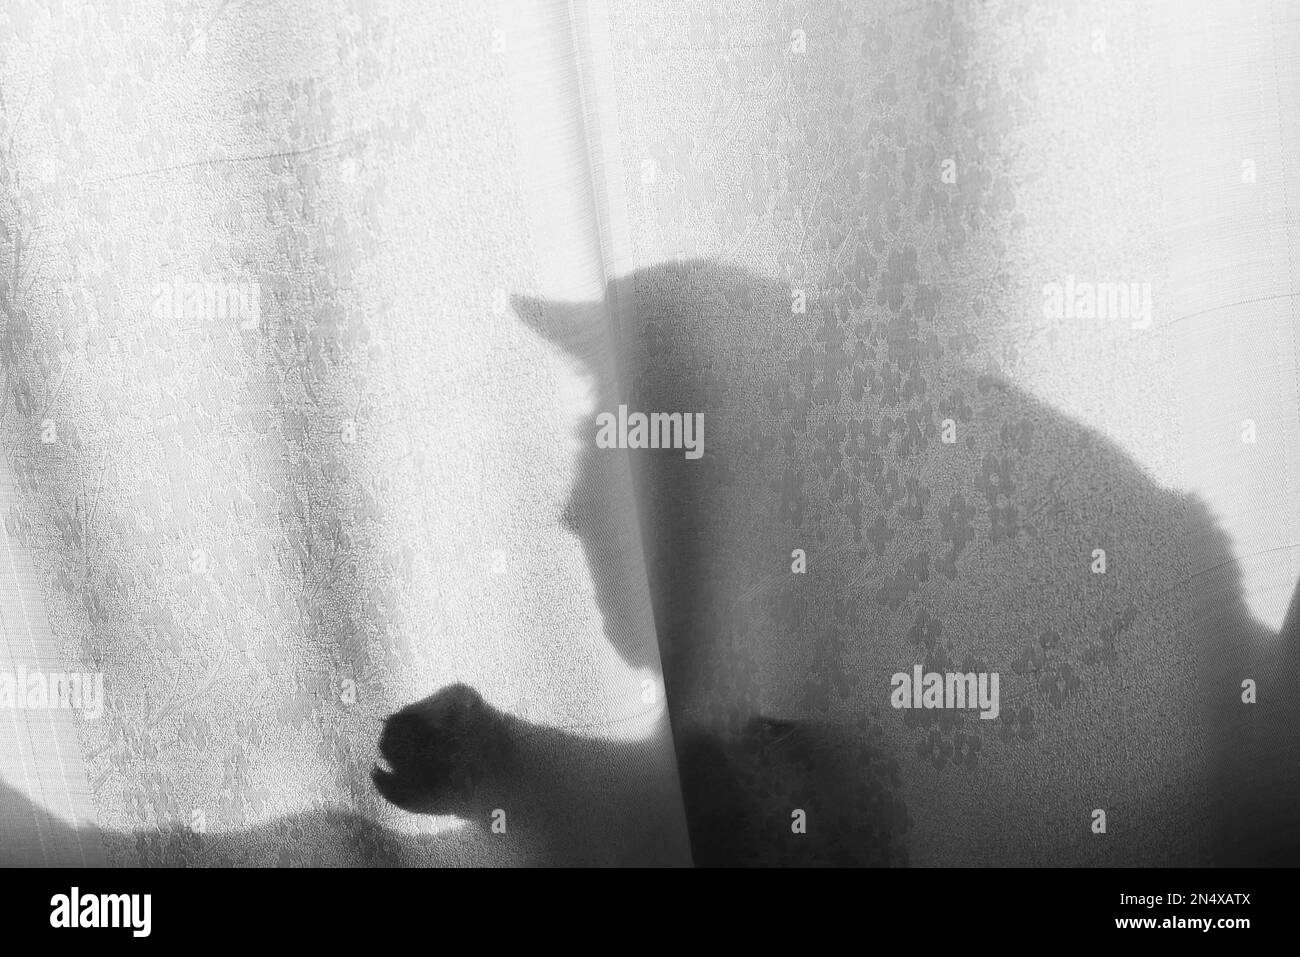 Foto silueta en blanco y negro de la sombra de un gato sentado en la cabeza de la ventana con orejas y patas con garras jugando a través de una cortina de filo naranja Foto de stock